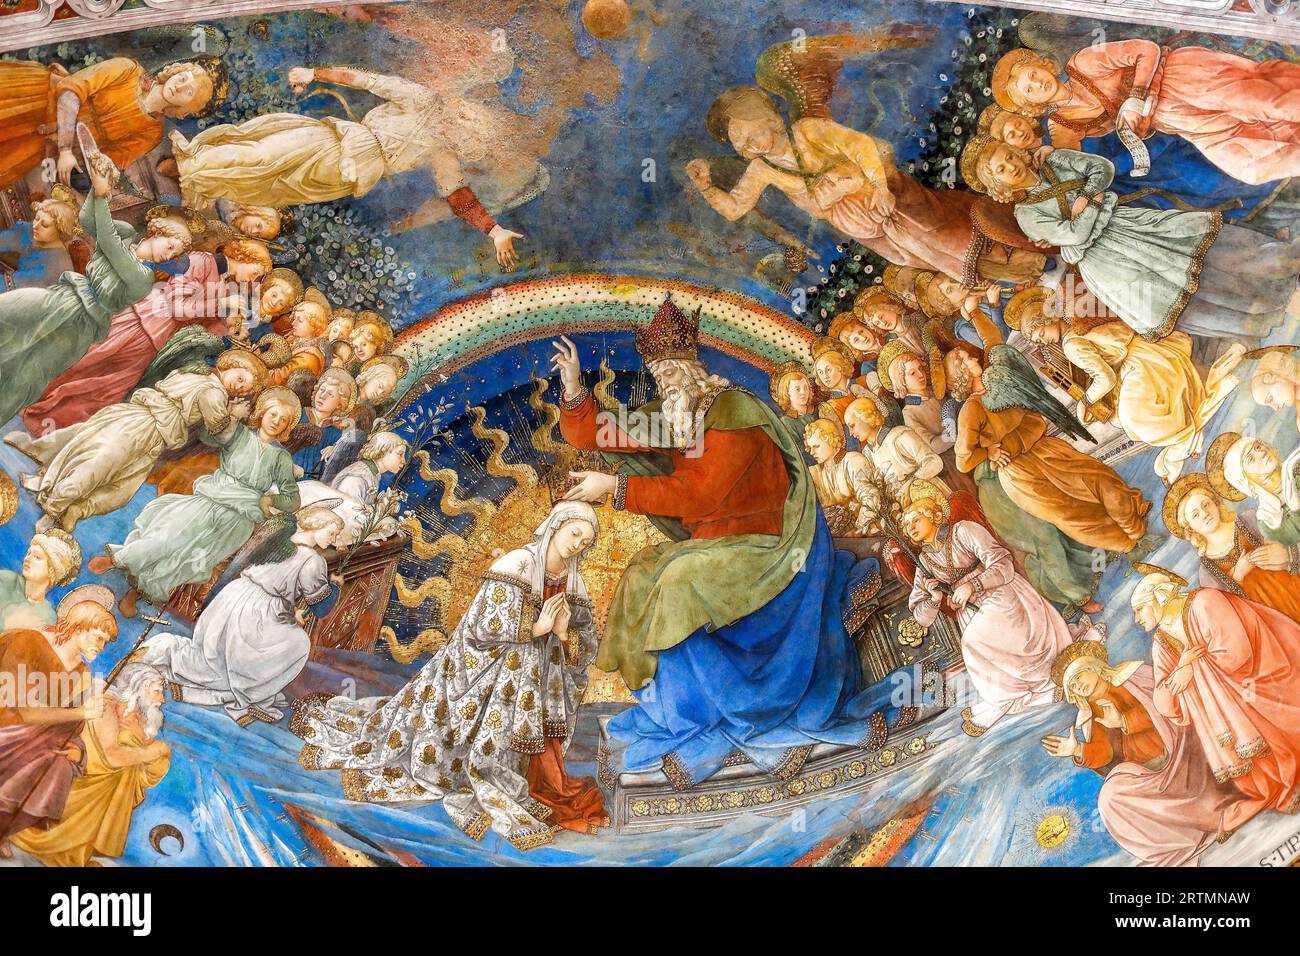 Cattedrale di Santa Maria Assunta ou Duomo di Spoleto, cathédrale Saint MaryÕs Assomption, Spoleto, Italie. La vie de la Vierge par Filippo Lippi, 1467-14 Banque D'Images